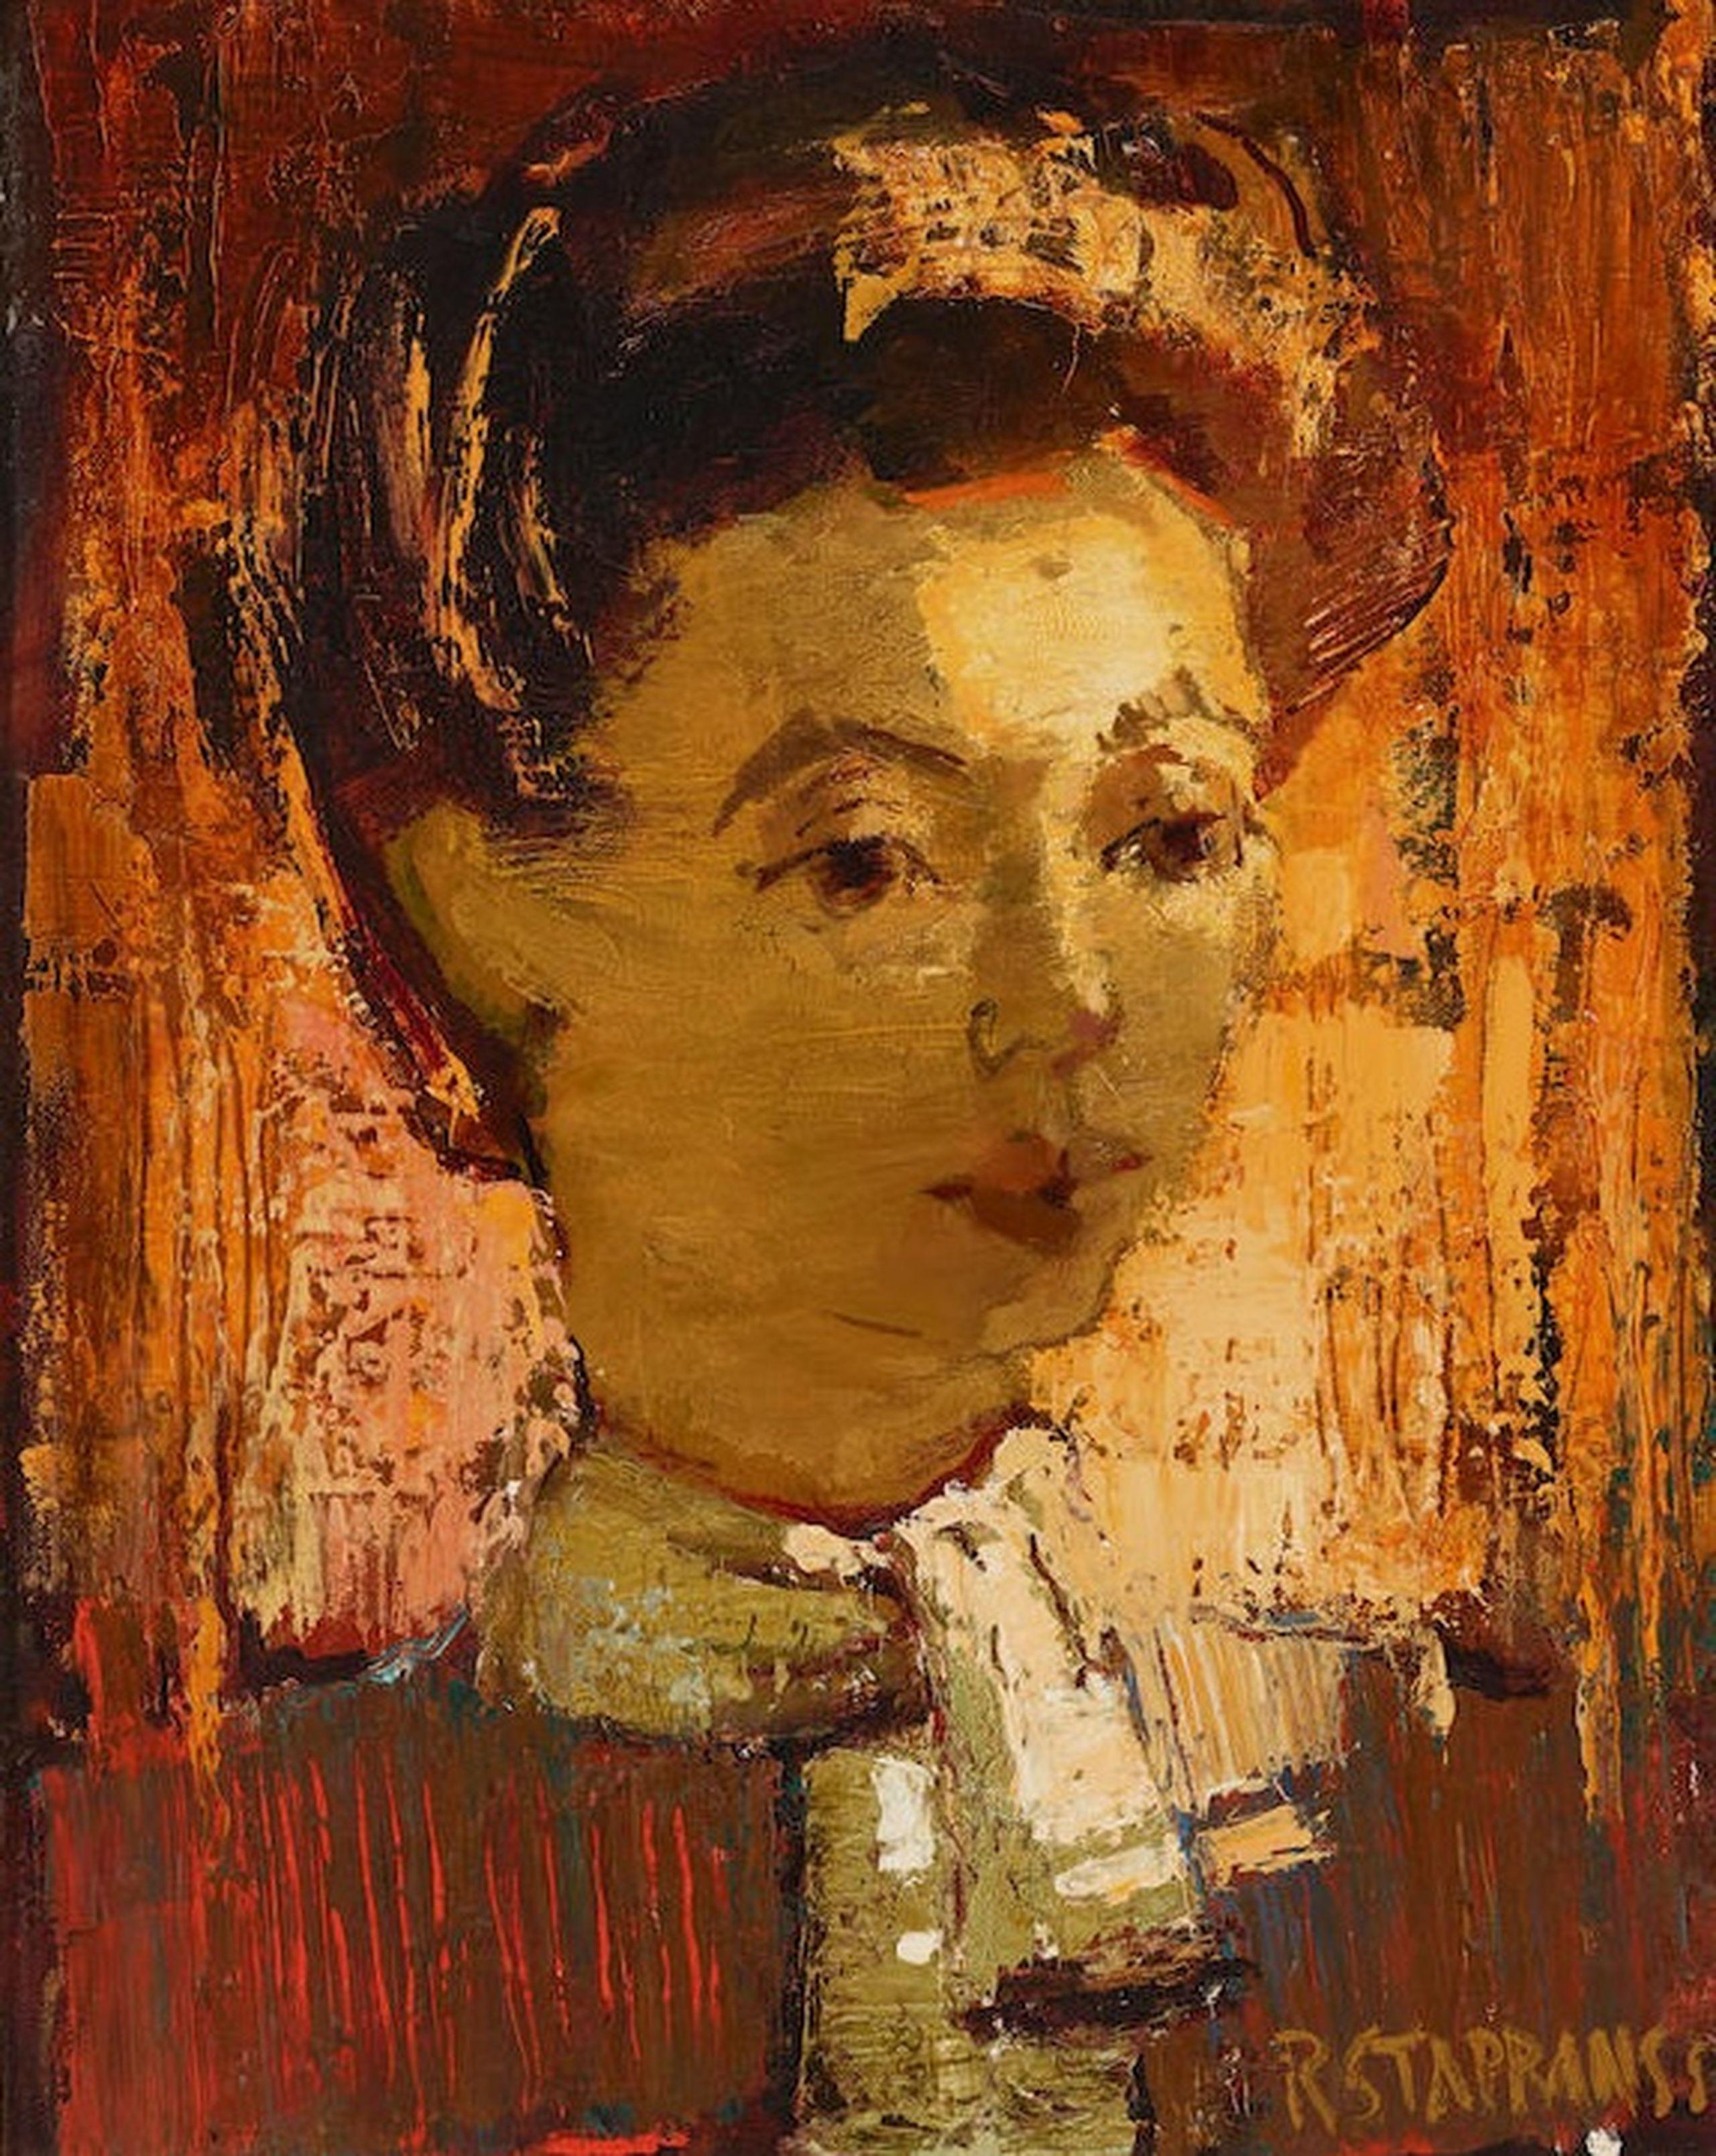 Raimonds Staprаns  Portrait Painting - Woman portrait. 1955, oil on canvas, 50.5 x 40.6 cm